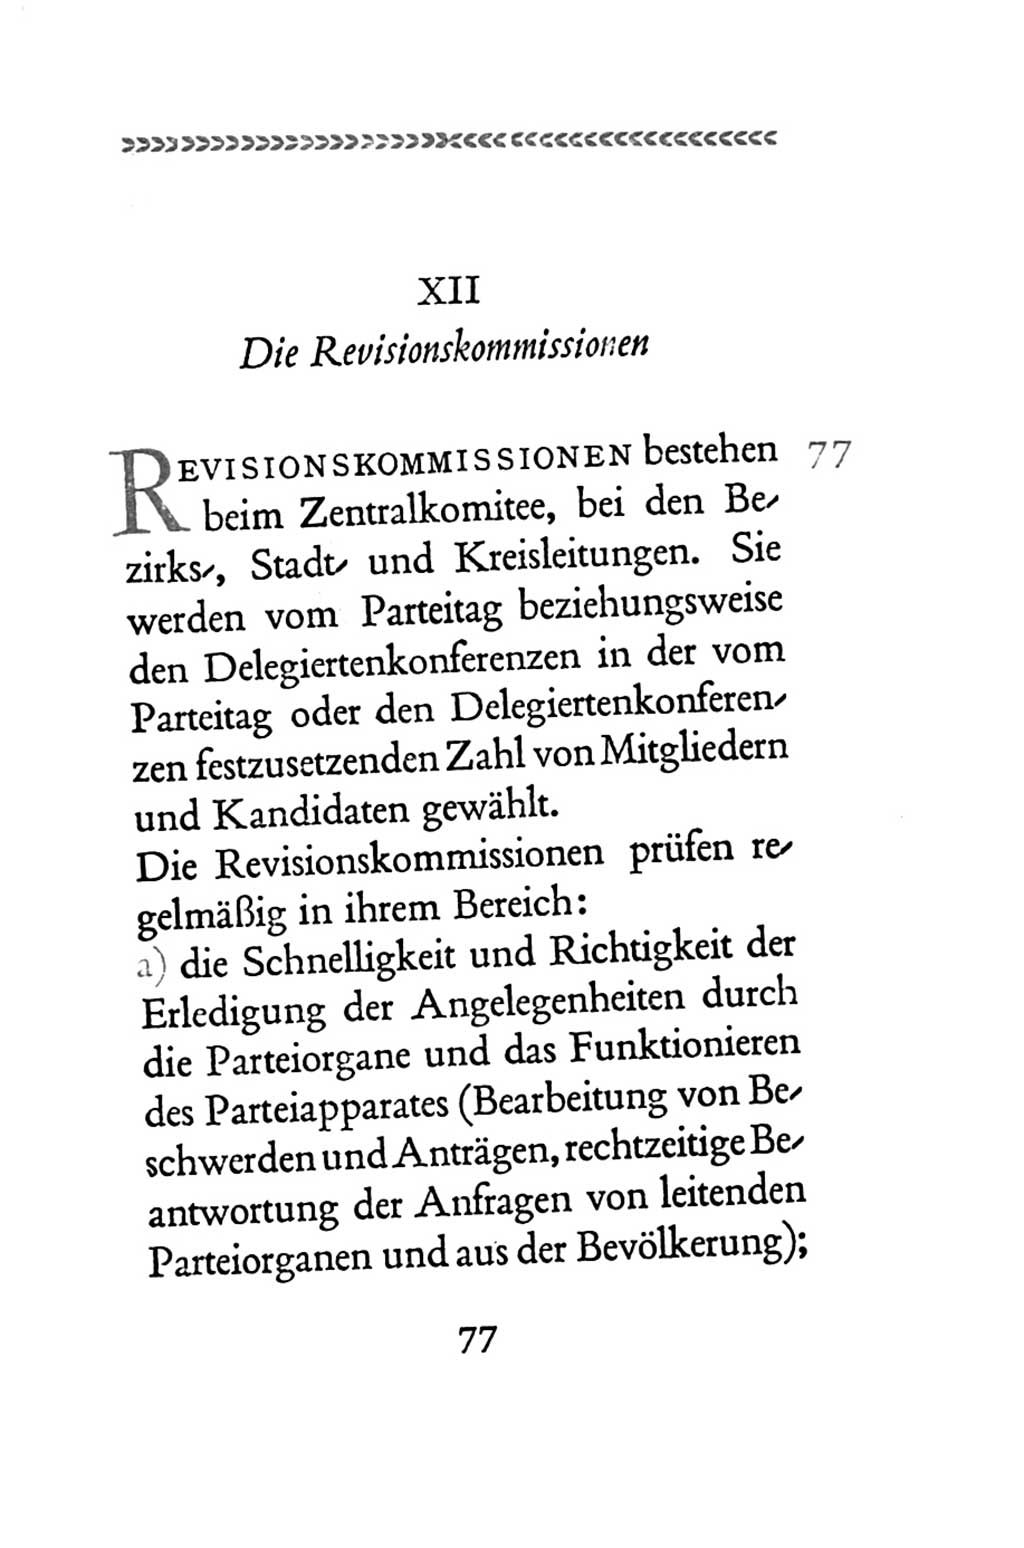 Statut der Sozialistischen Einheitspartei Deutschlands (SED) 1954, Seite 77